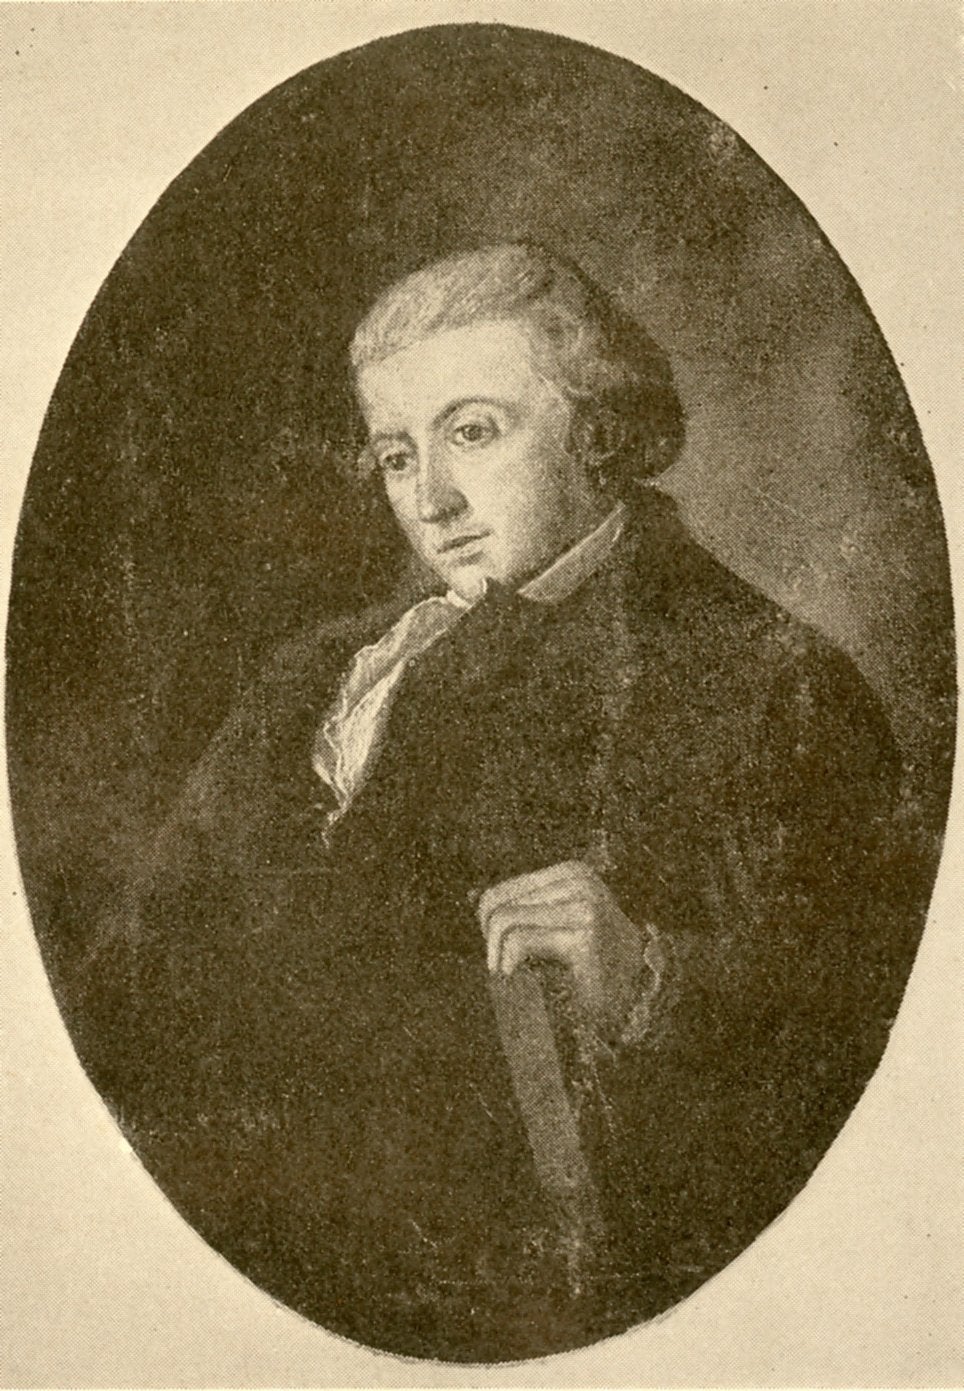 William Rawle, c. 1790